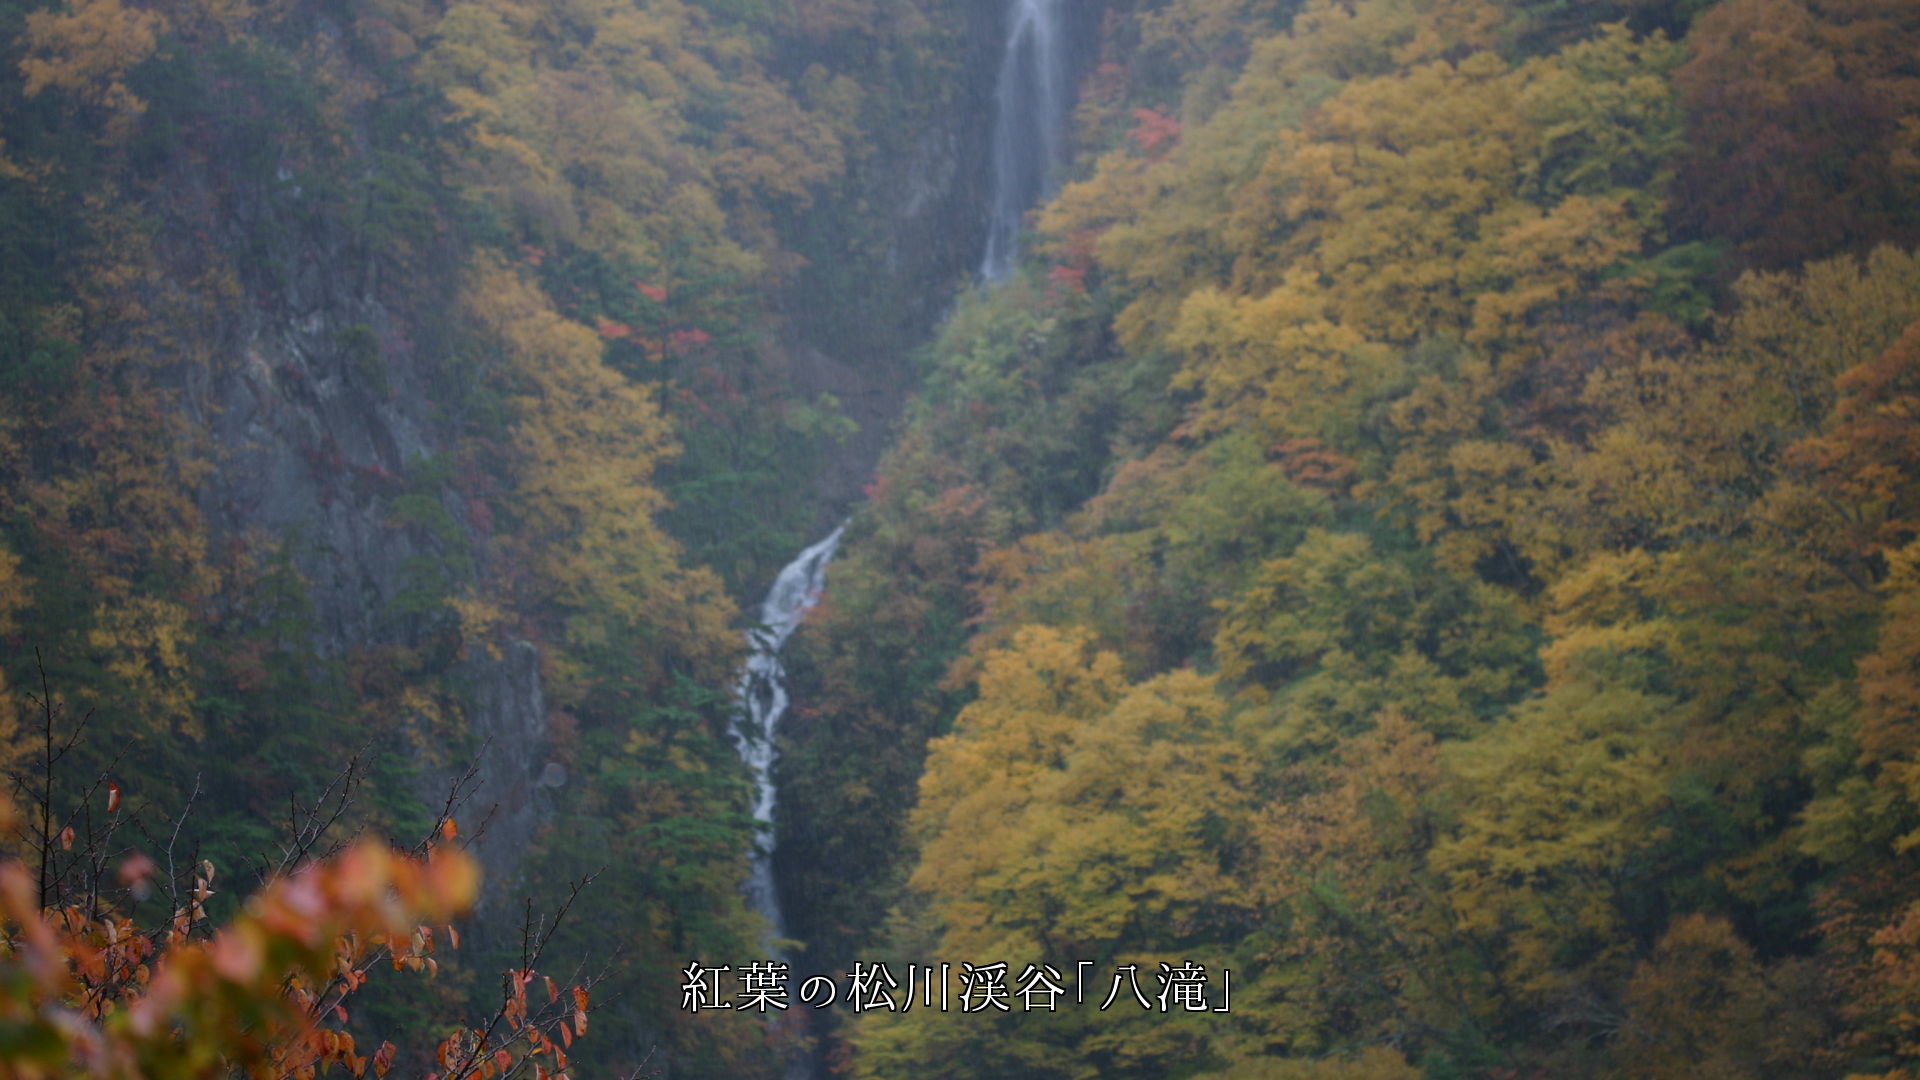 滝の白い筋に映える紅葉　共に美しさを　秋の風情を　高め合っている　
